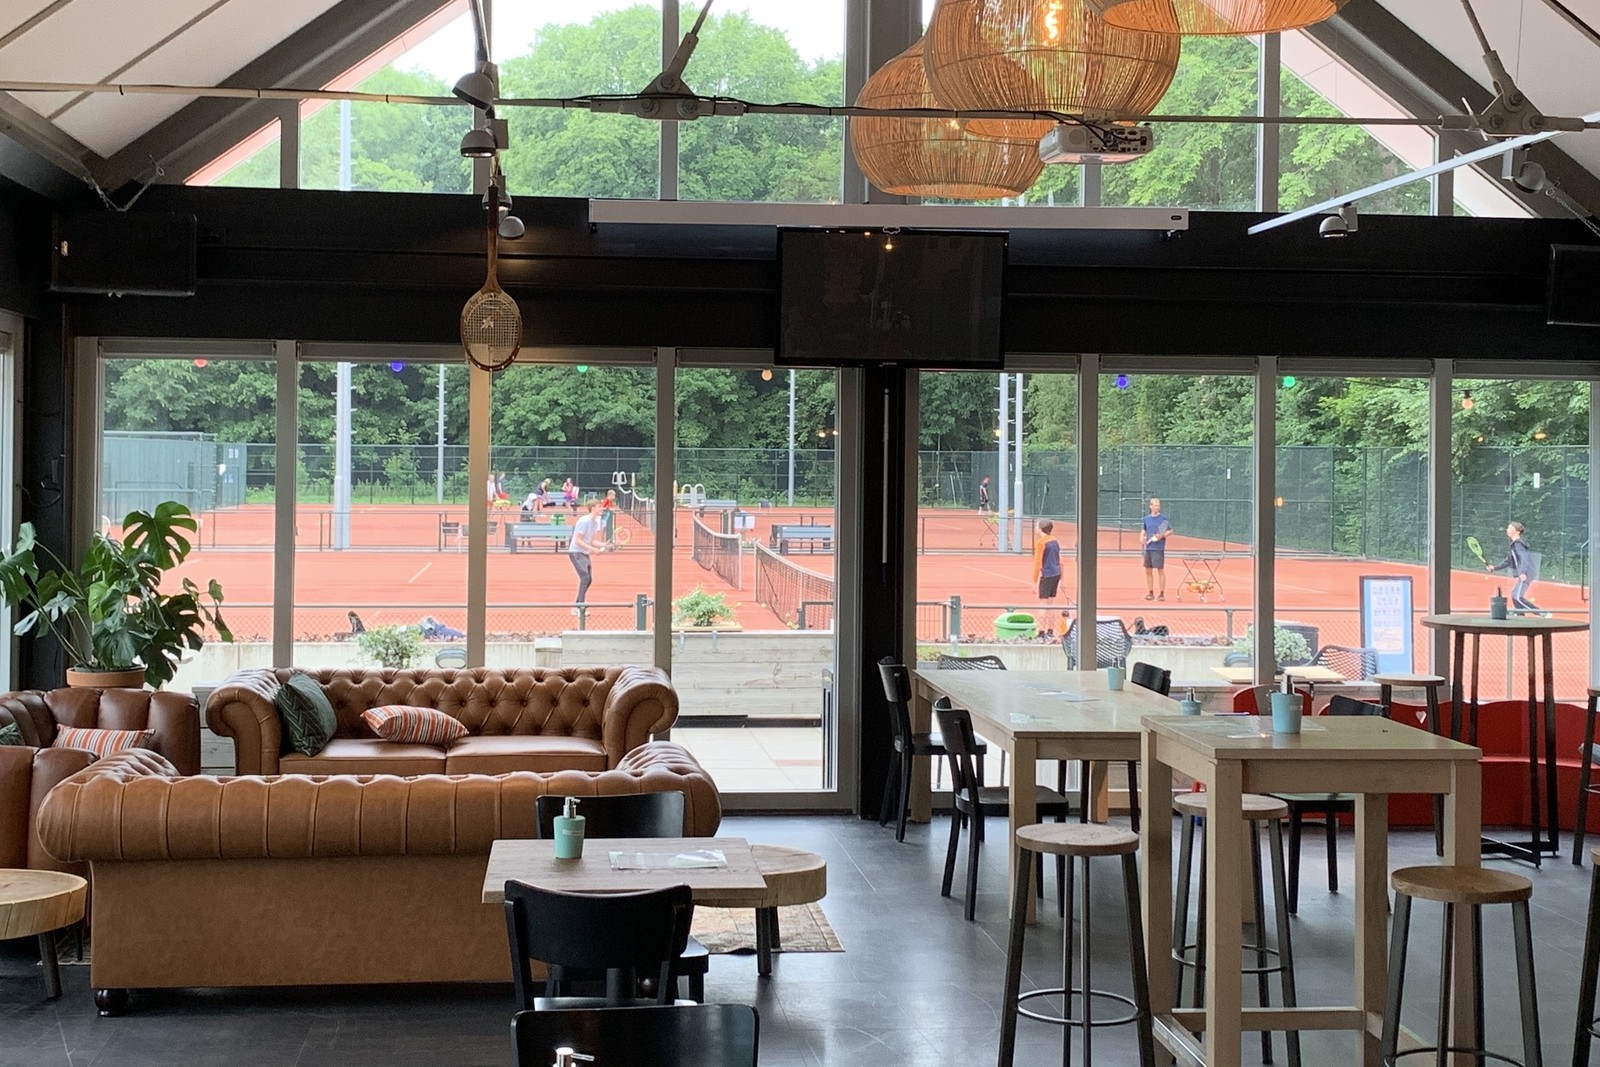 nieuw interieur met chesterfields tennisclub elzenhagen zuid Amsterdam Noord zomer 2020